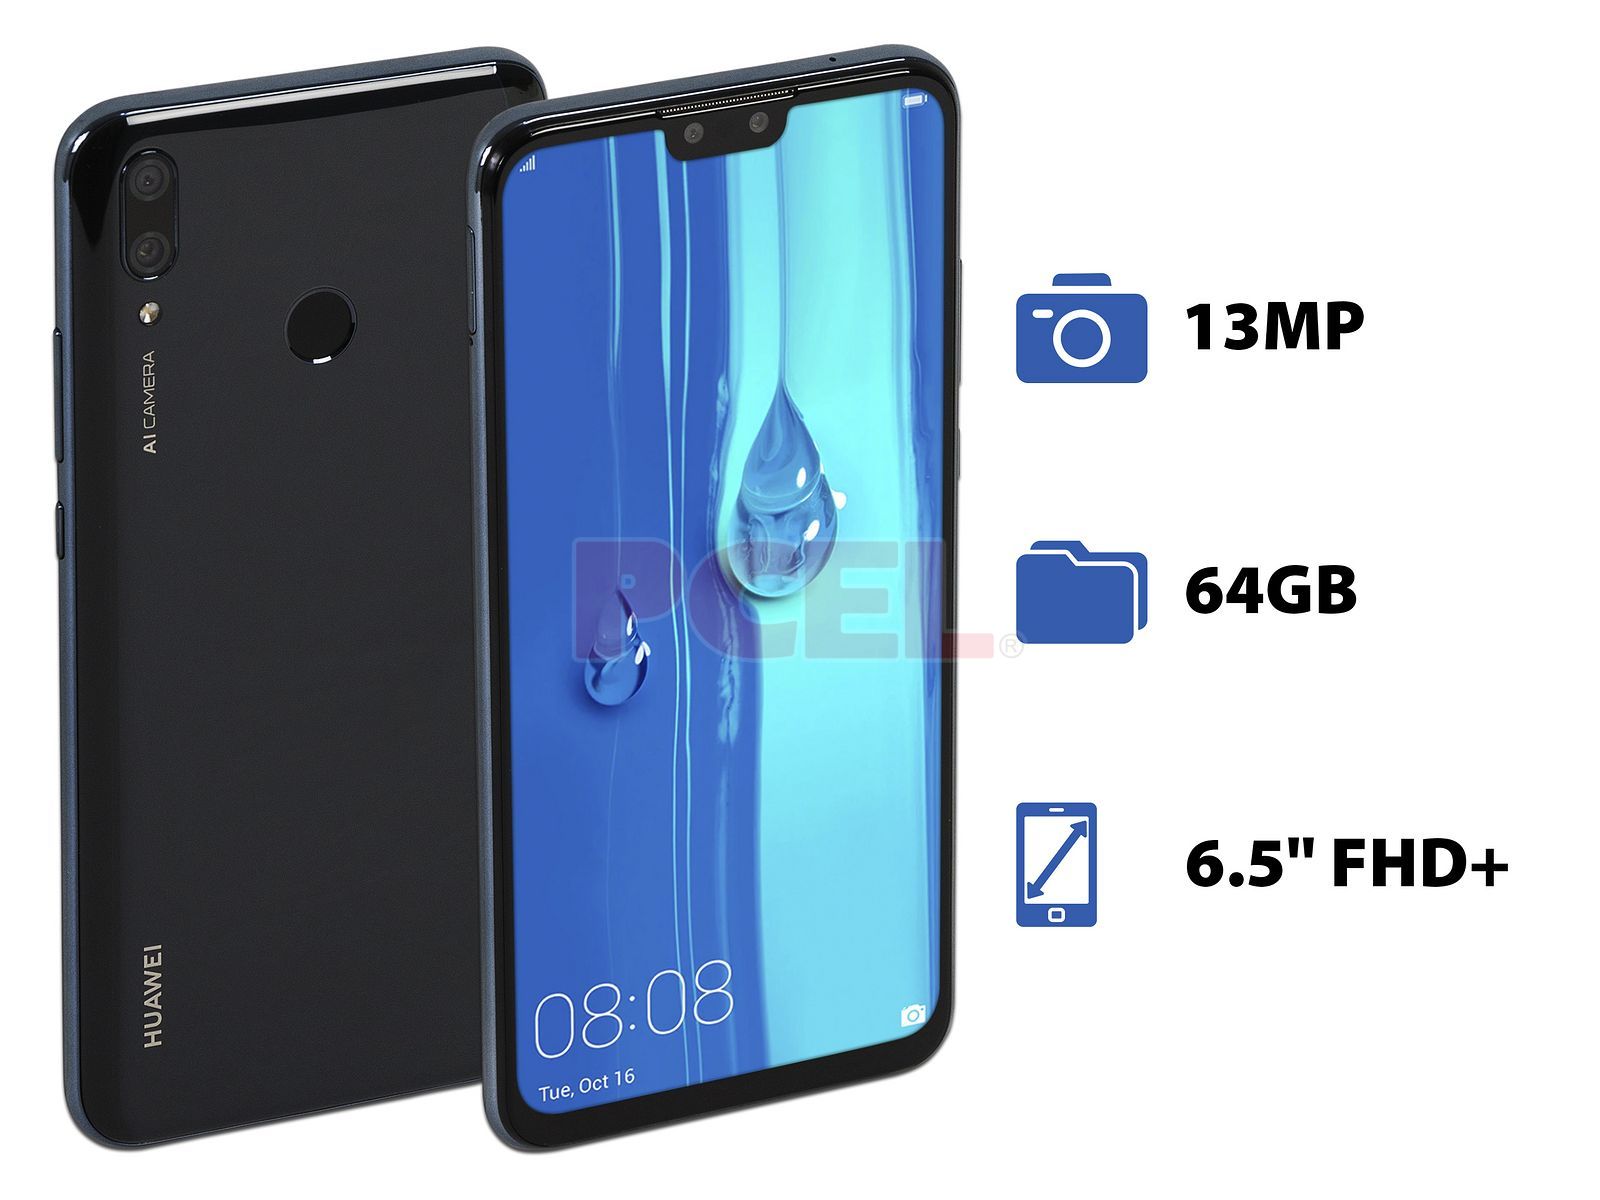 Smartphone Huawei Y9(2019): Procesador Kirin 710 Octa-core (hasta   GHz), Memoria RAM de 3GB, Almacenamiento de 64GB, Pantalla LED Multi Touch  de 